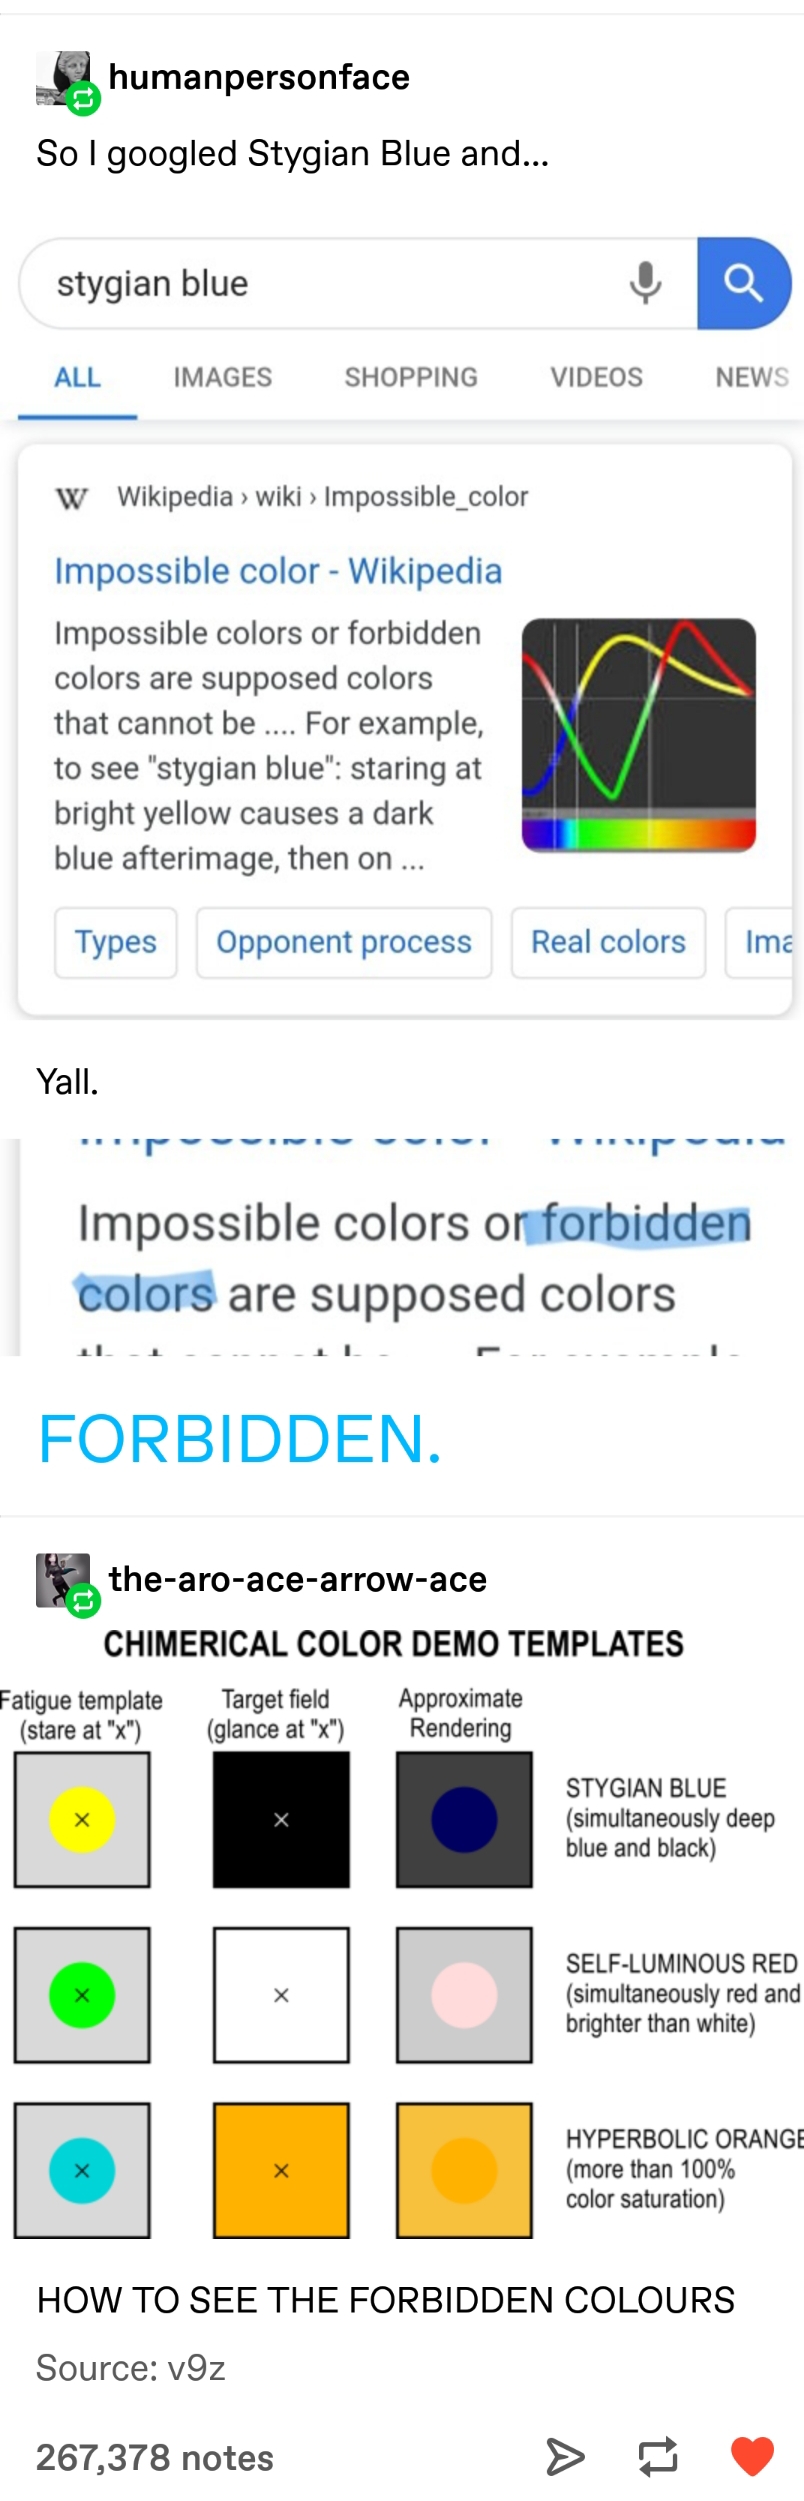 Forbidden colours, a guide.